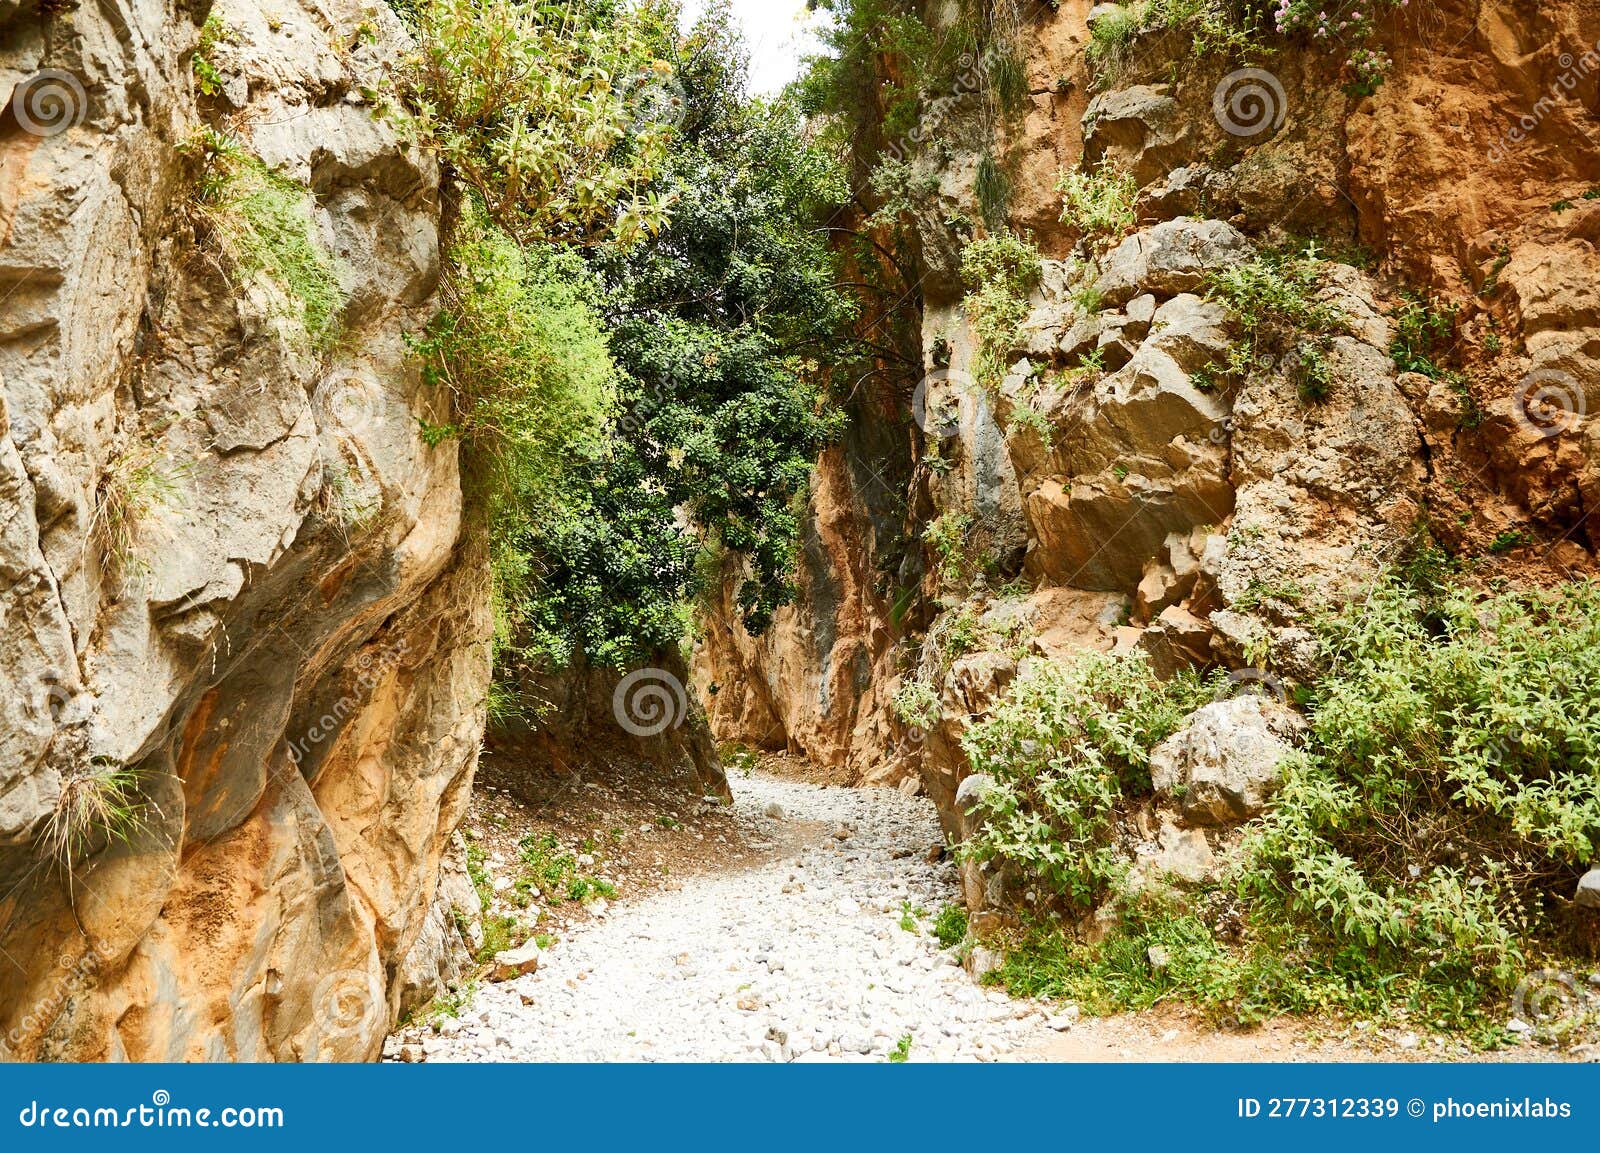 imbros canyon in crete, greece